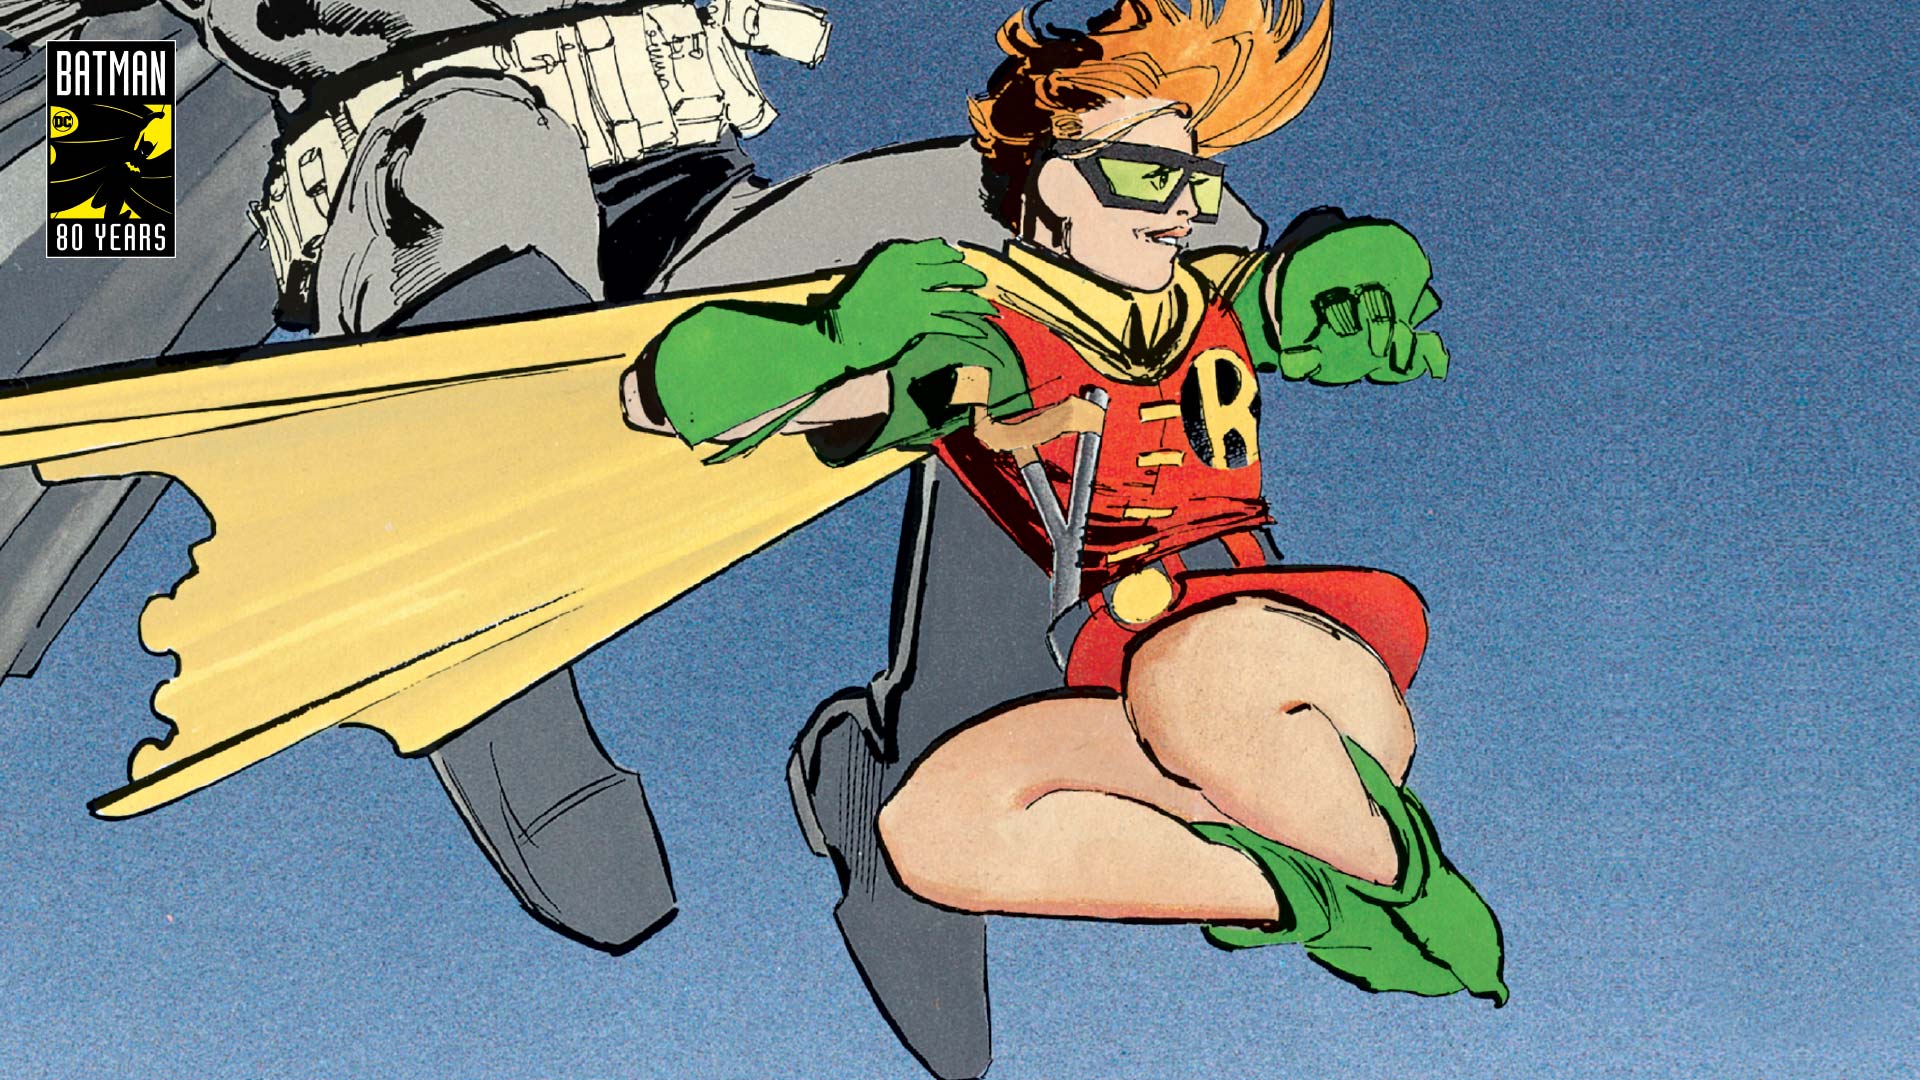 Carrie Kelly: Batman’s future sidekick!